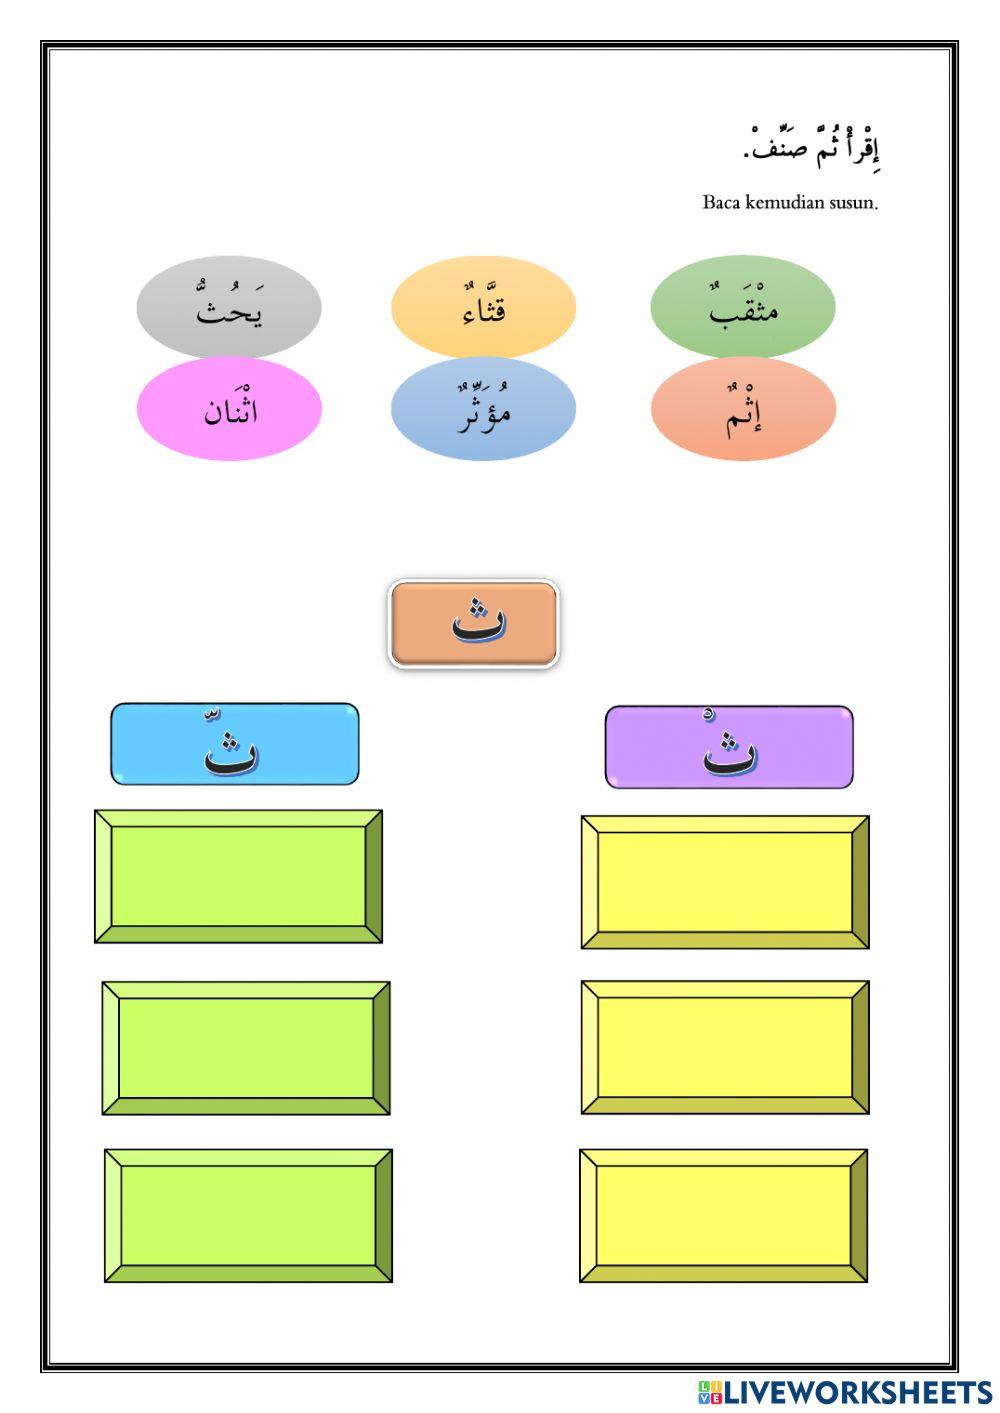 Huruf Hijaiyah (Sakinah dan Muyaddadah) worksheet | Live Worksheets